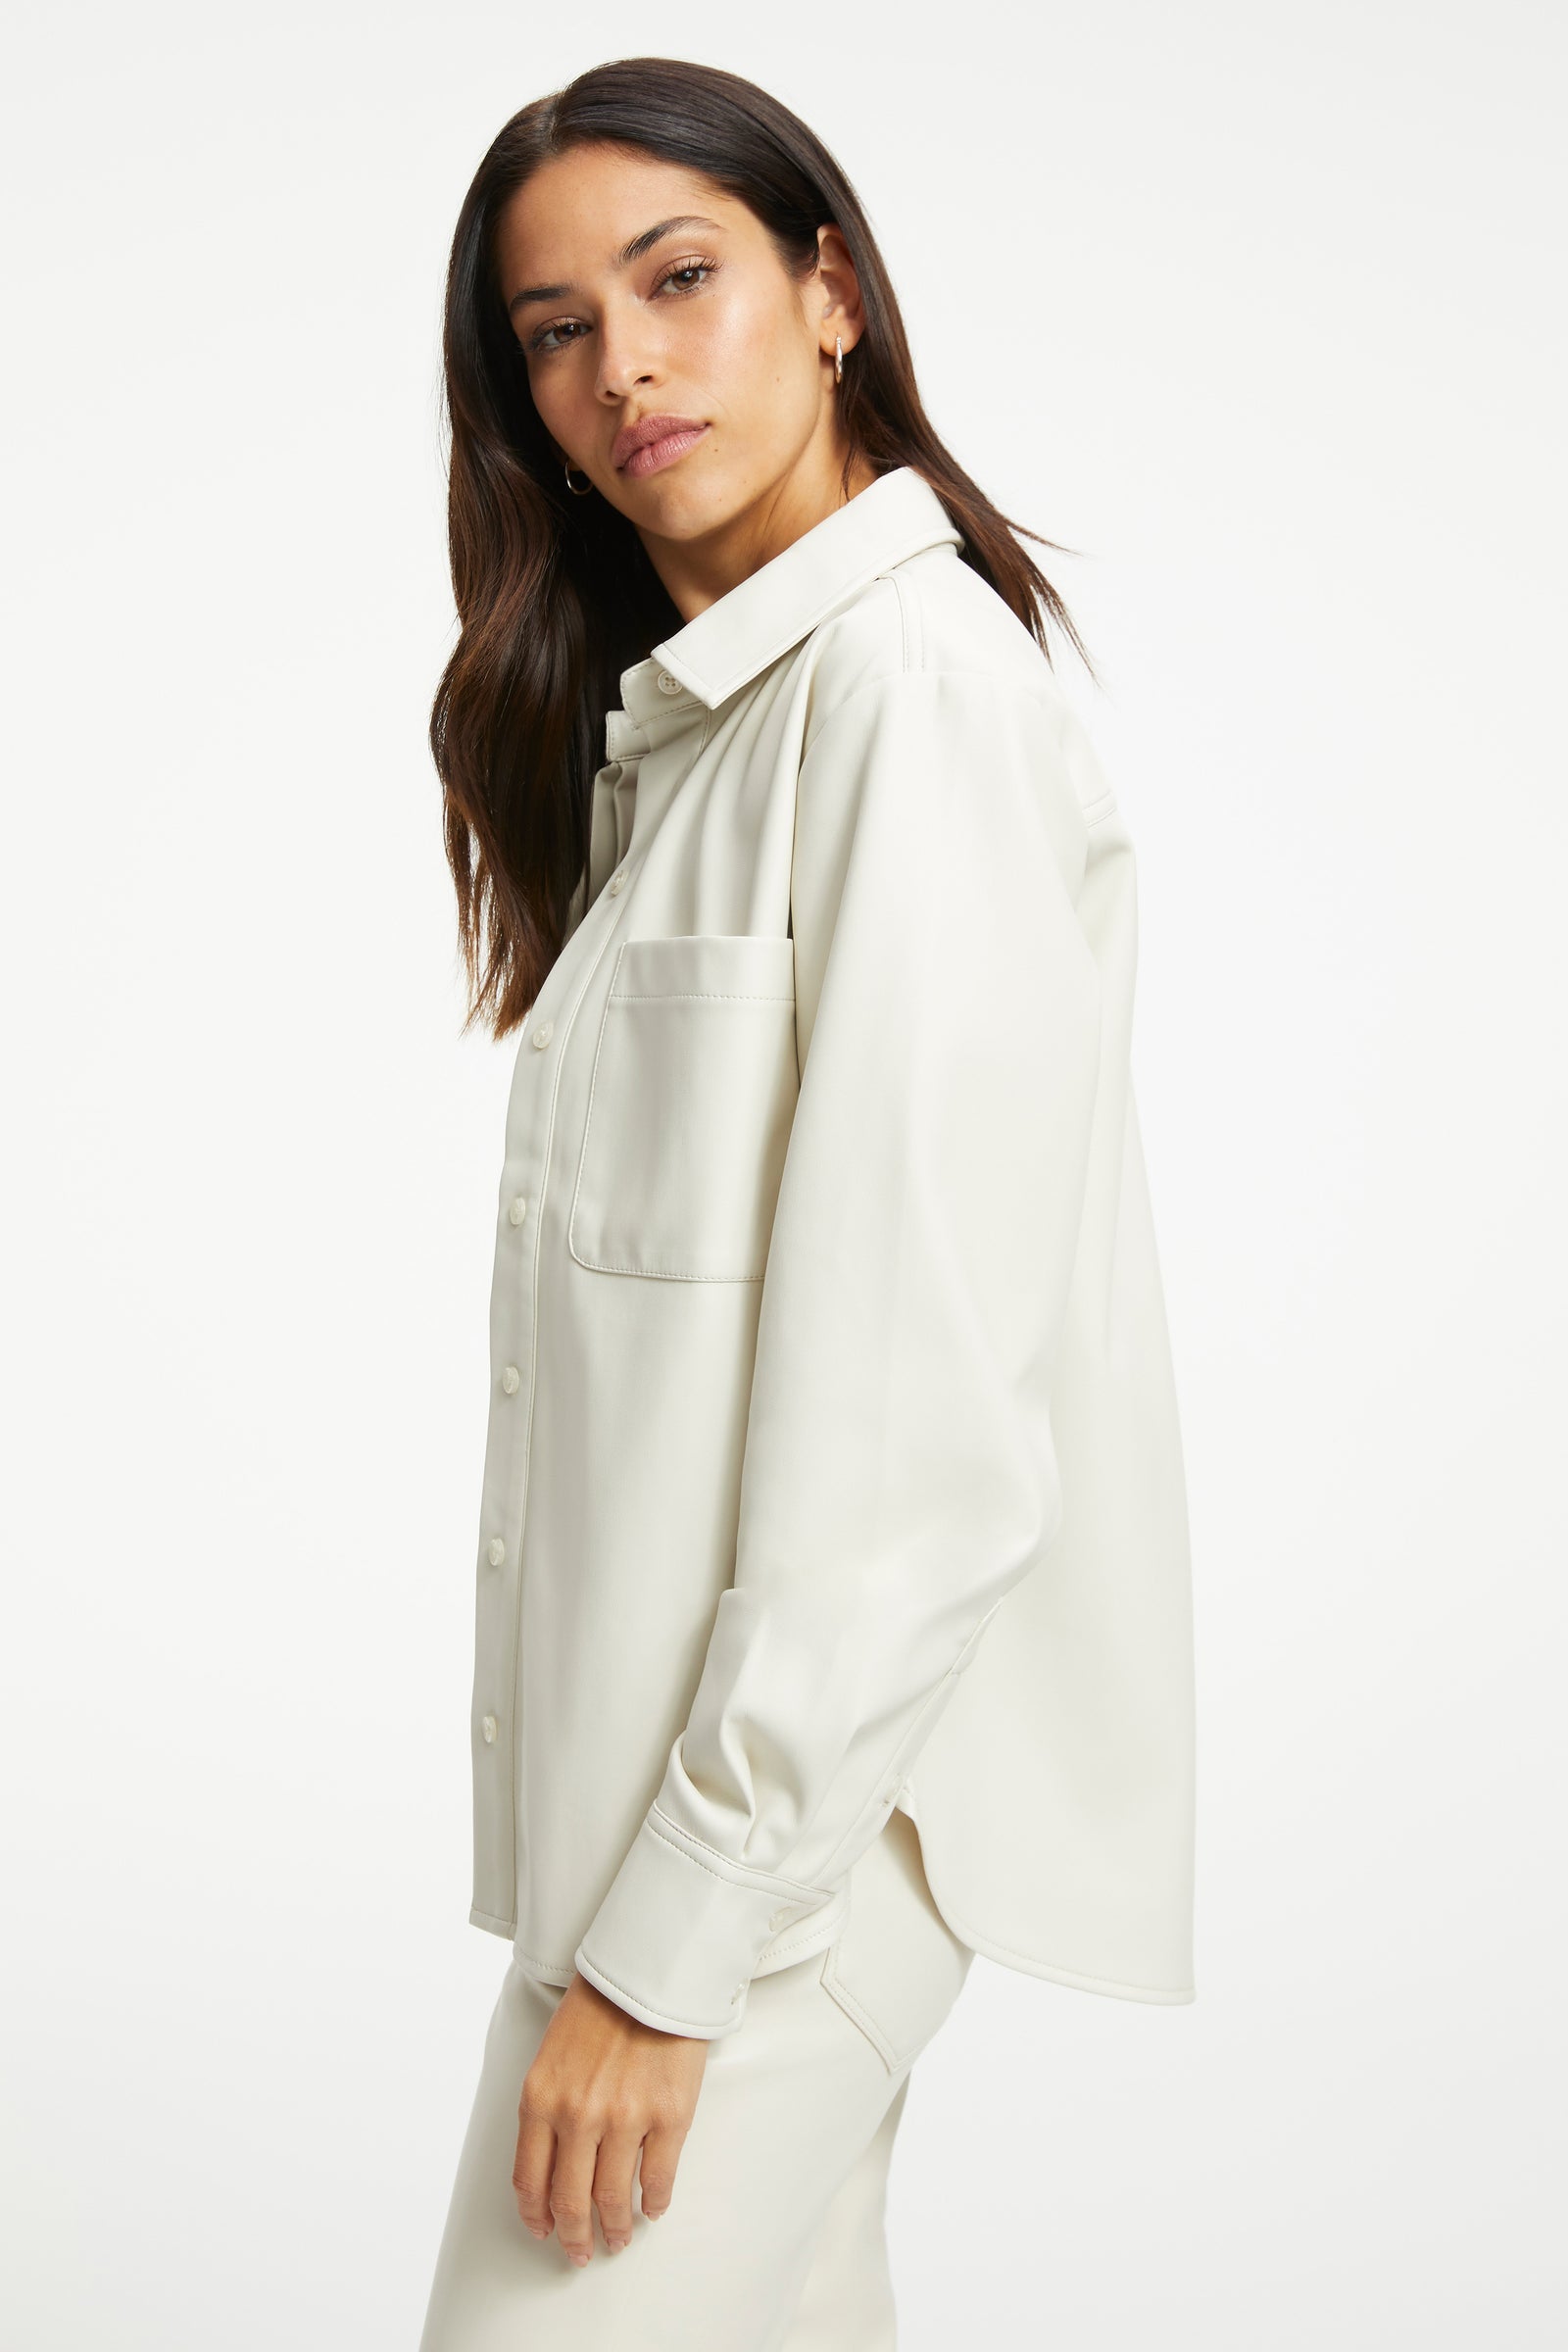 Women's Full Sleeve Leather Shirt In White